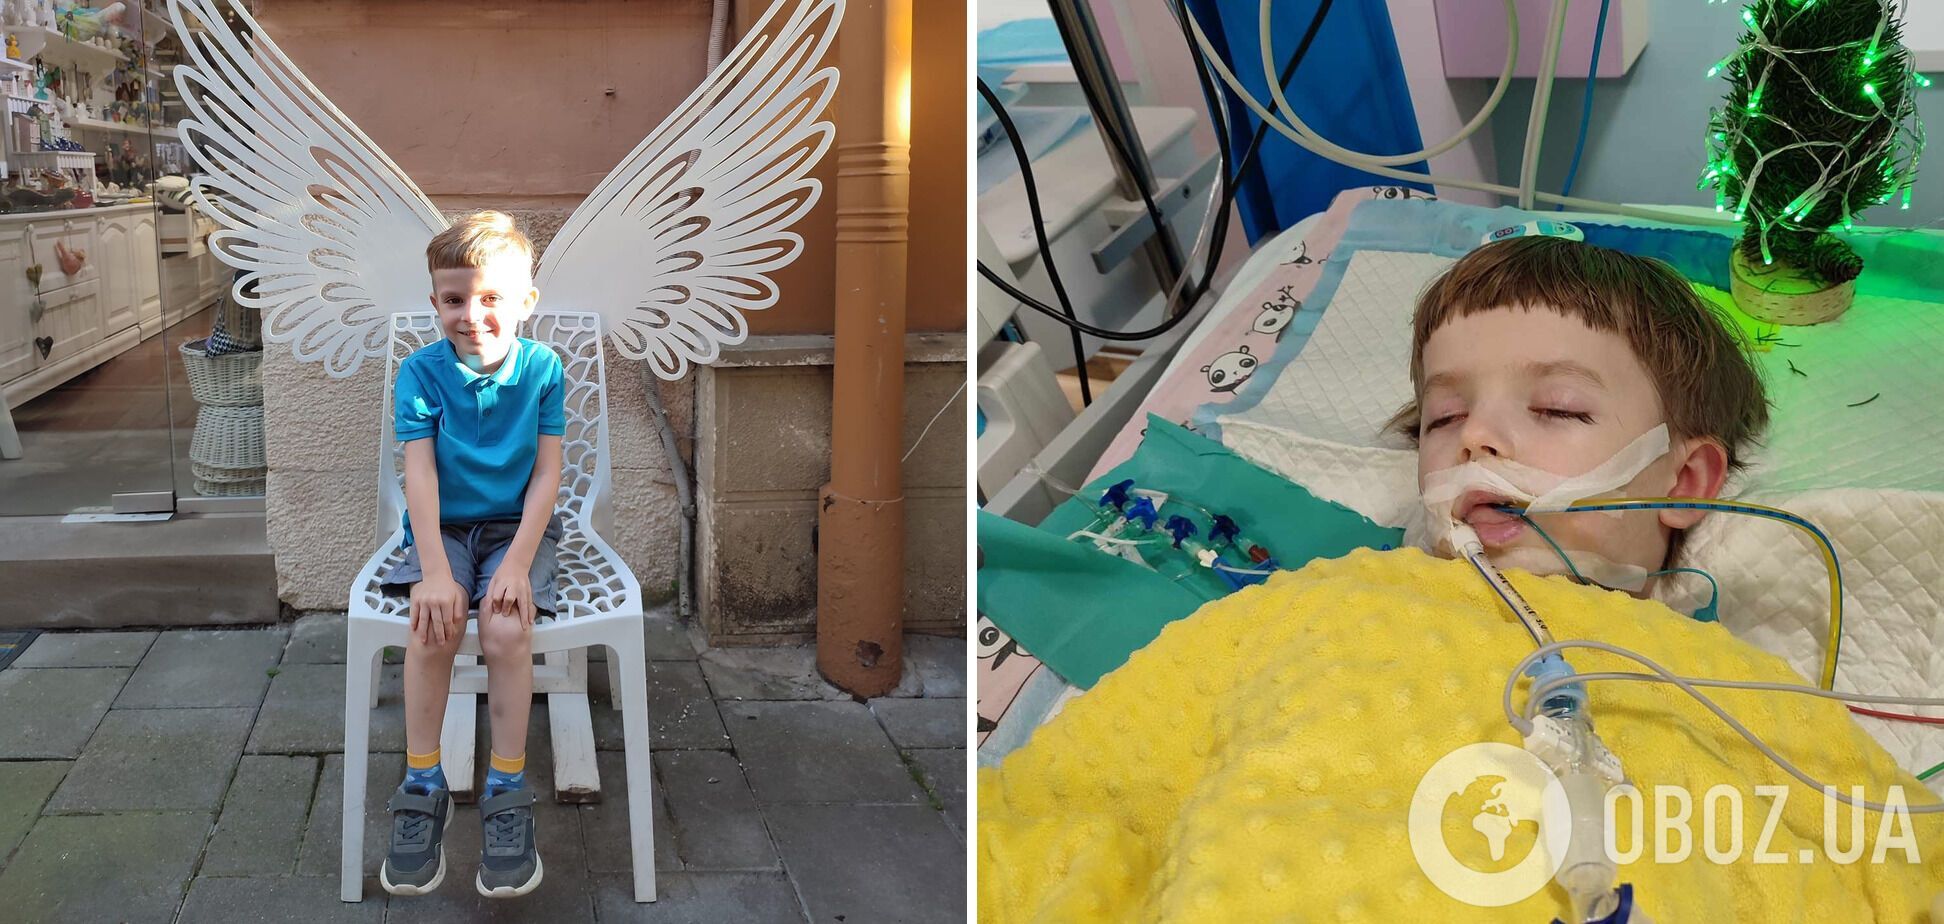 'Не имели сертификата для лечения детей': комиссия предоставила заключение о смерти 5-летнего мальчика после удаления зубов во Львове